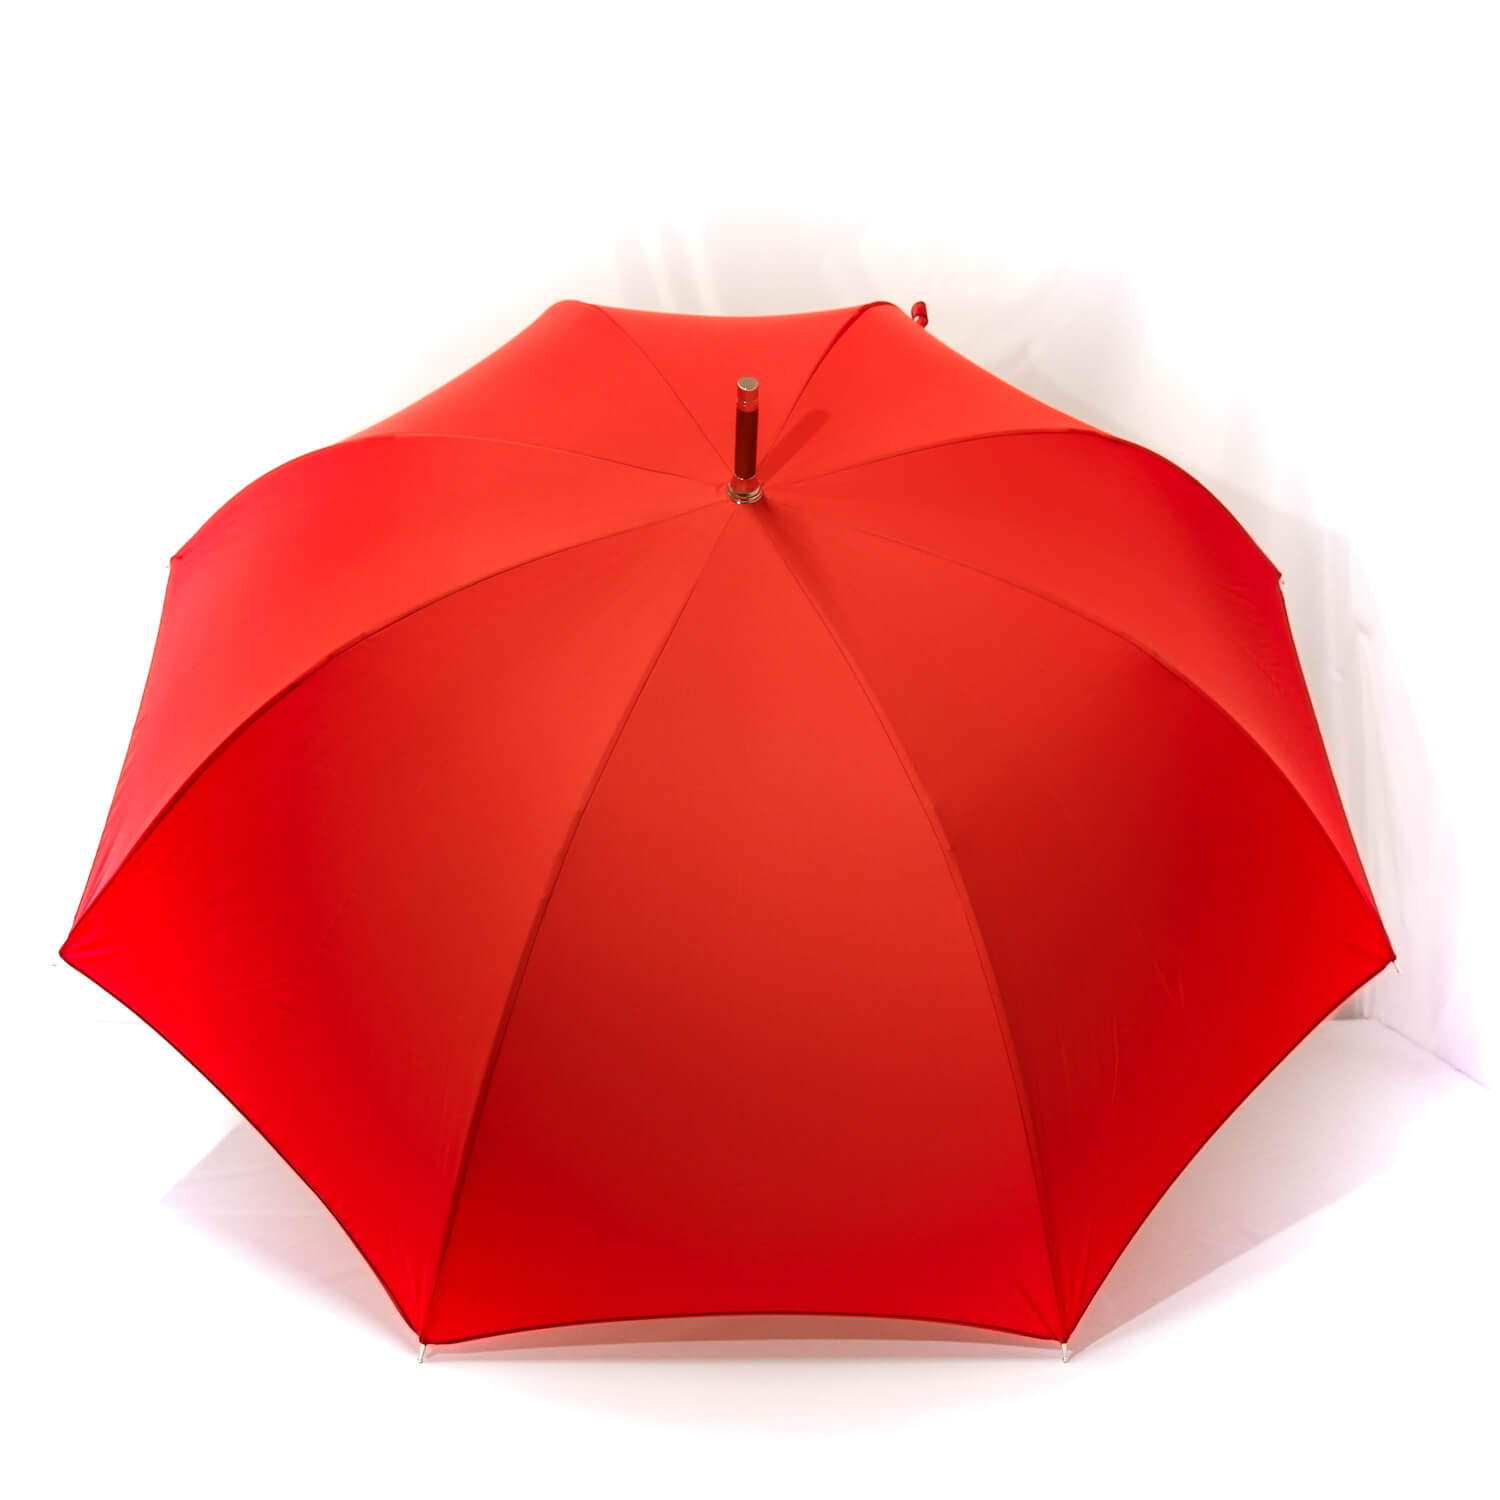 Grand parapluie homme rouge